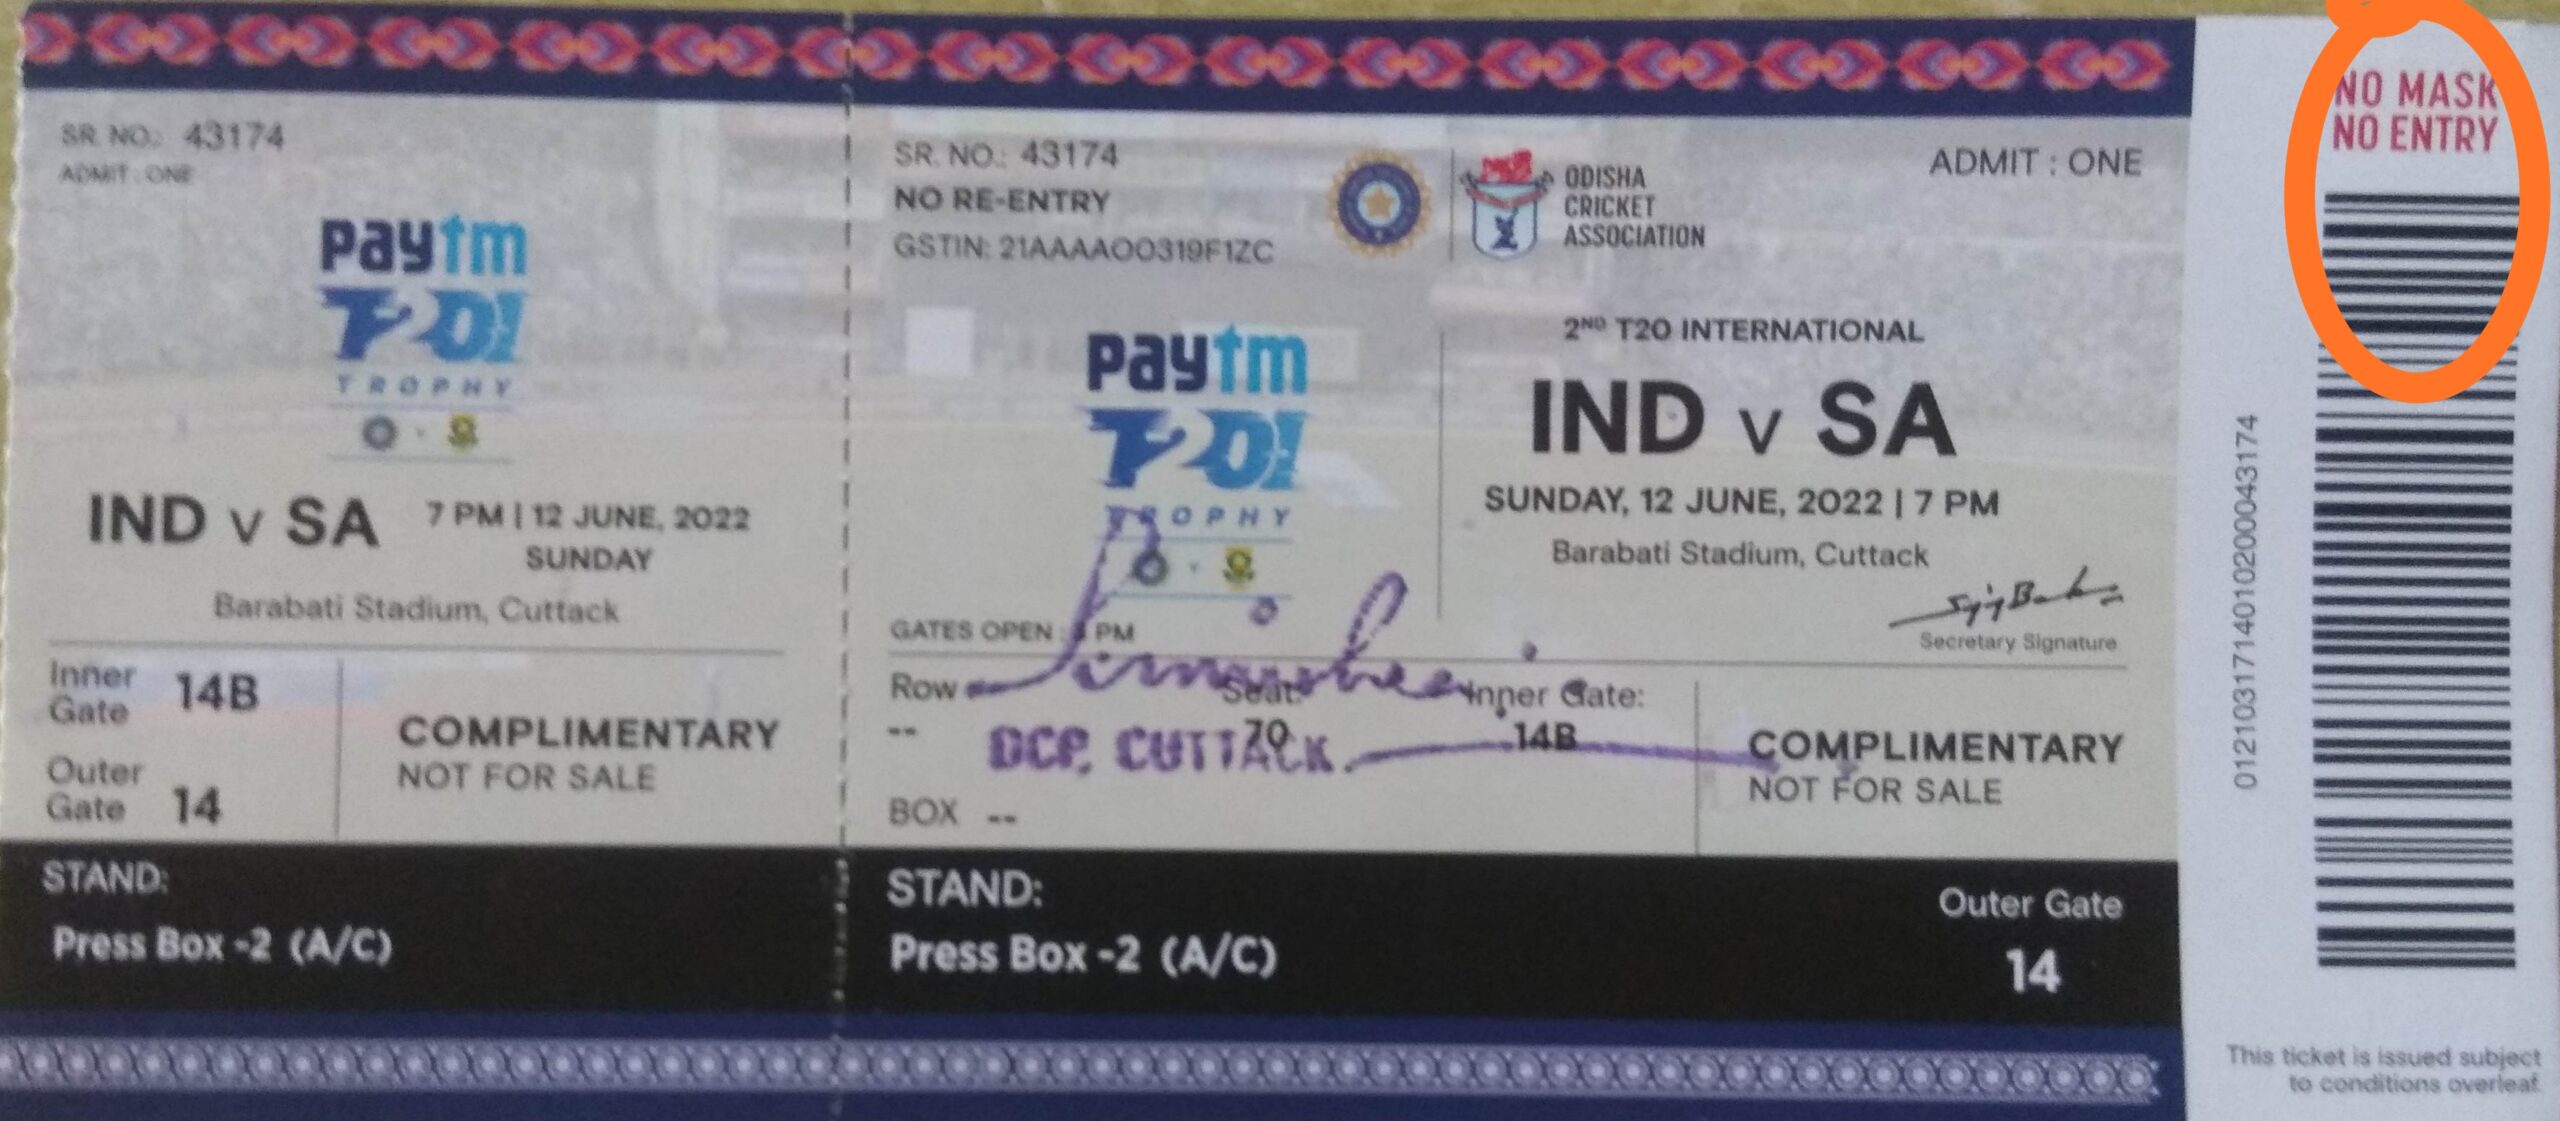 India vs SA T20I at Barabati: no entry without mask, said DCP cuttack.